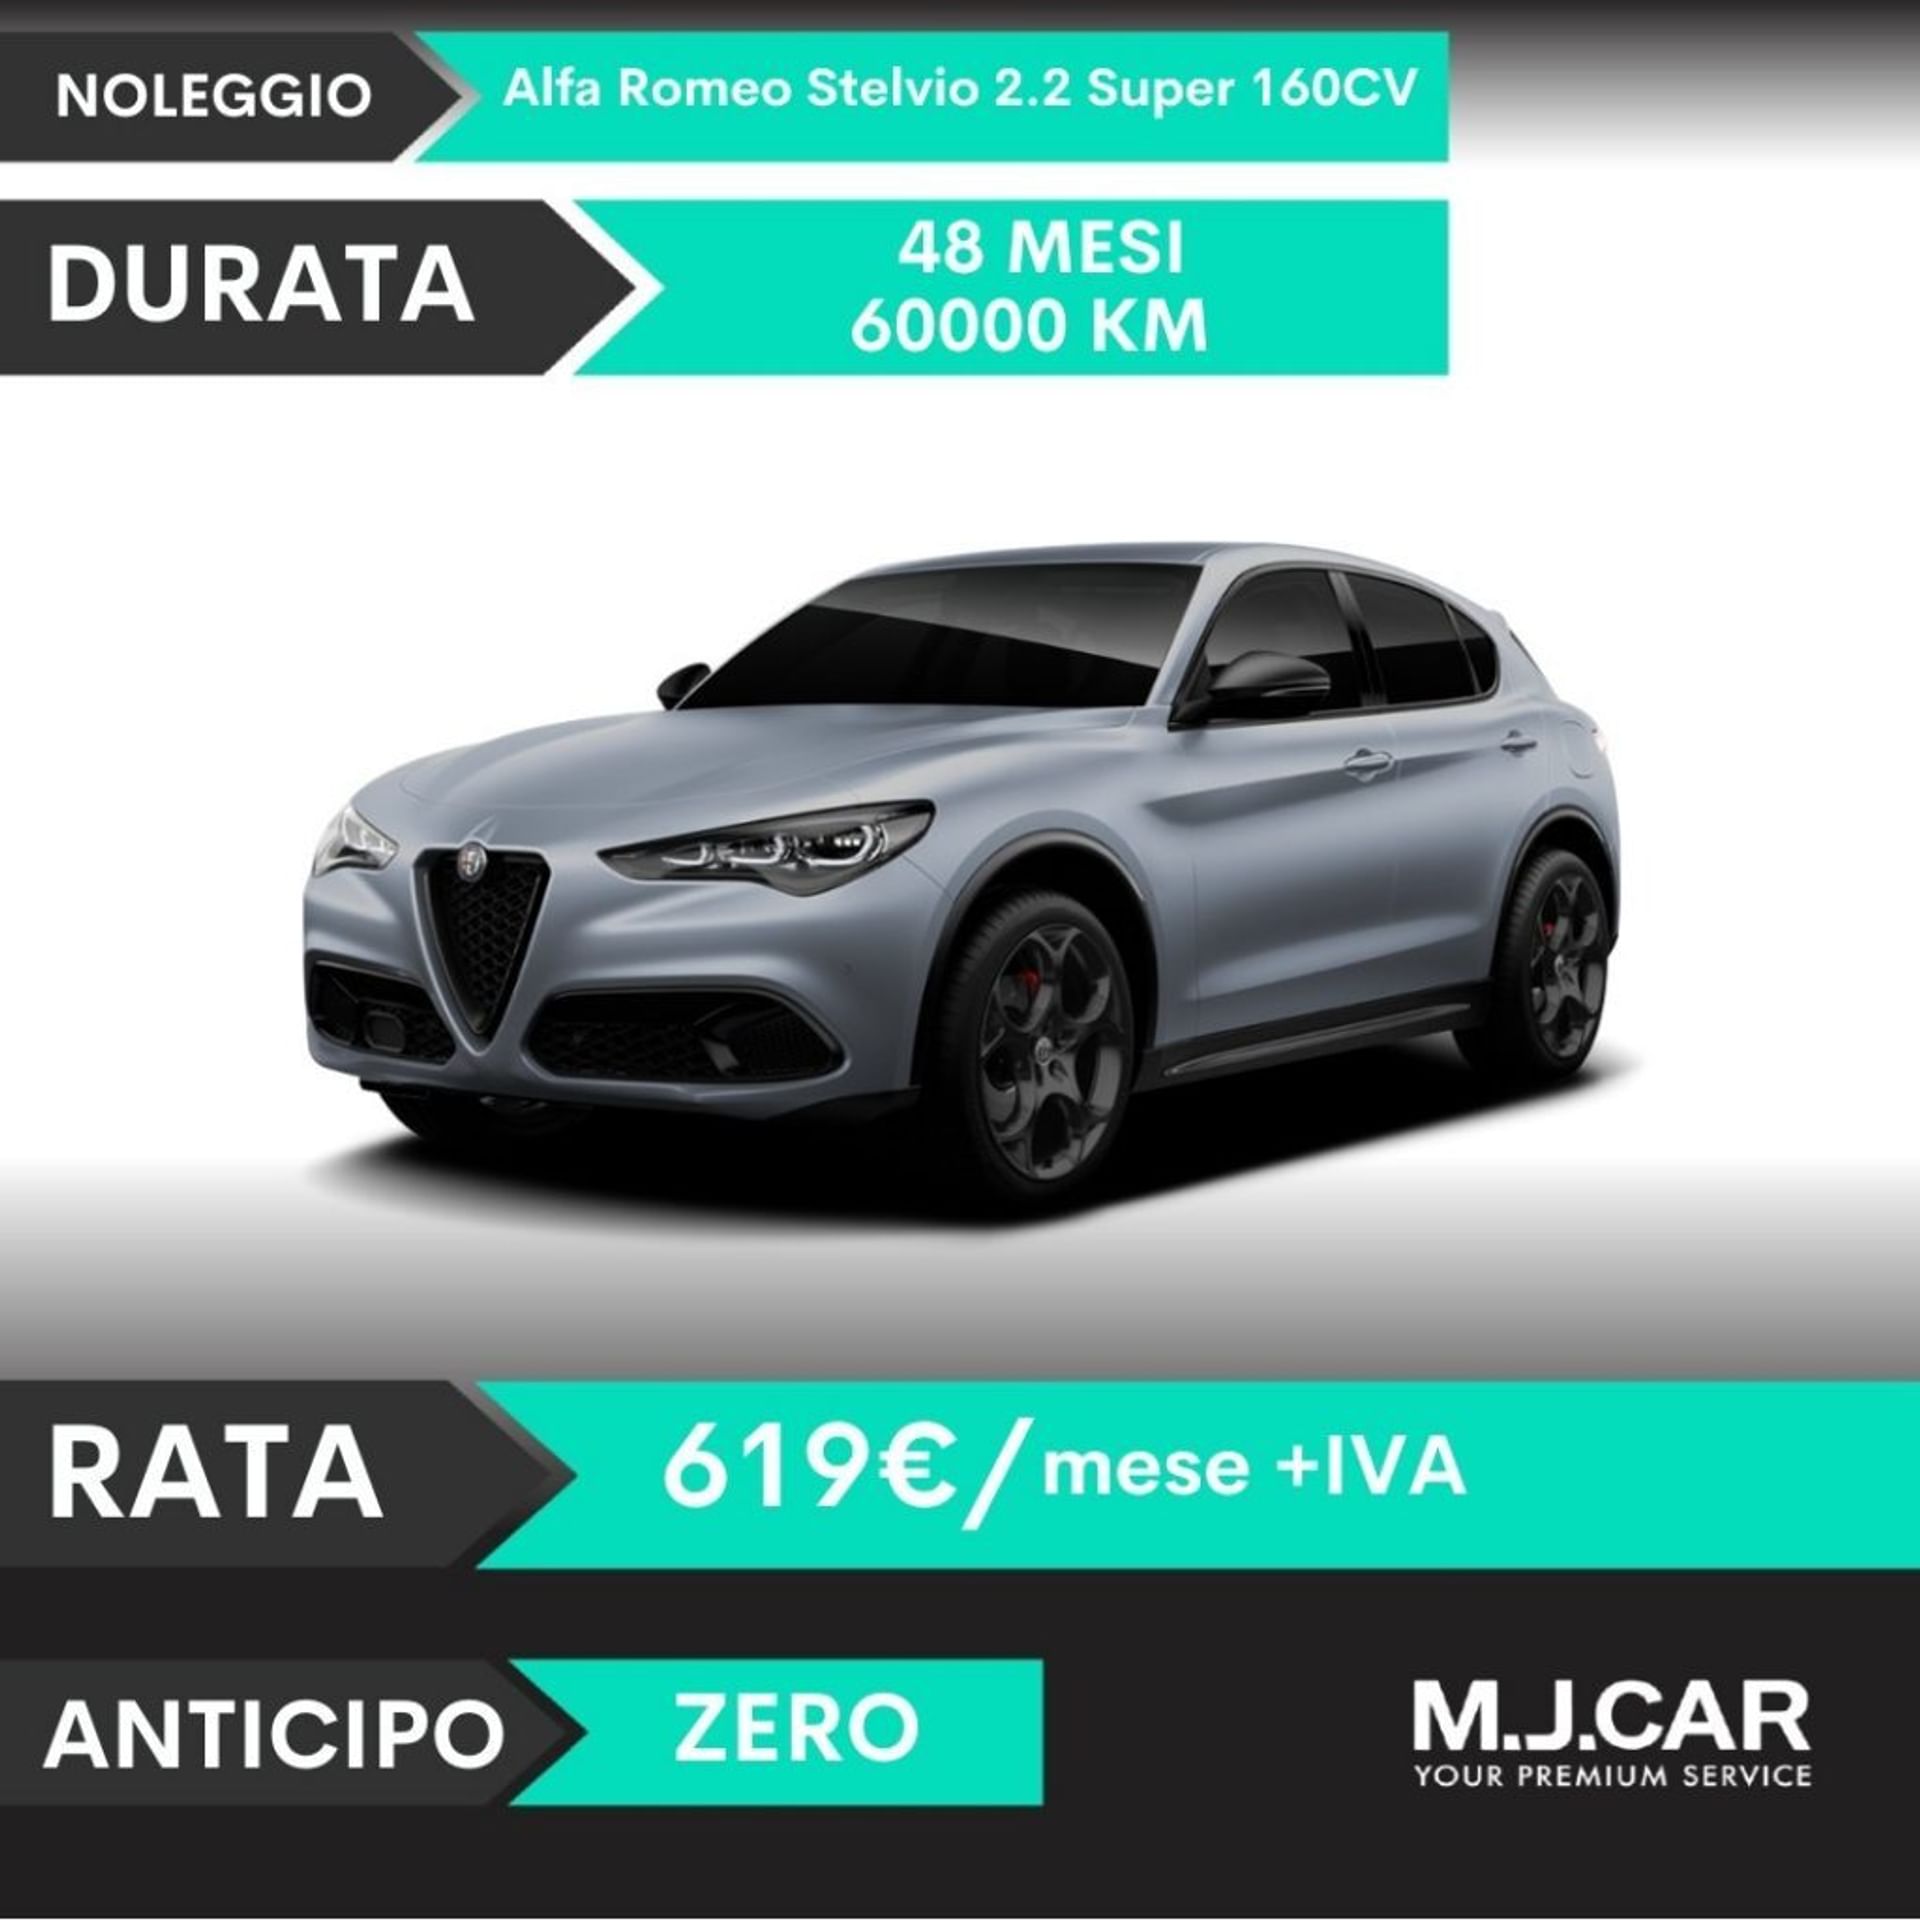 Alfa romeo Stelvio 2.2 Turbodiesel 160 CV